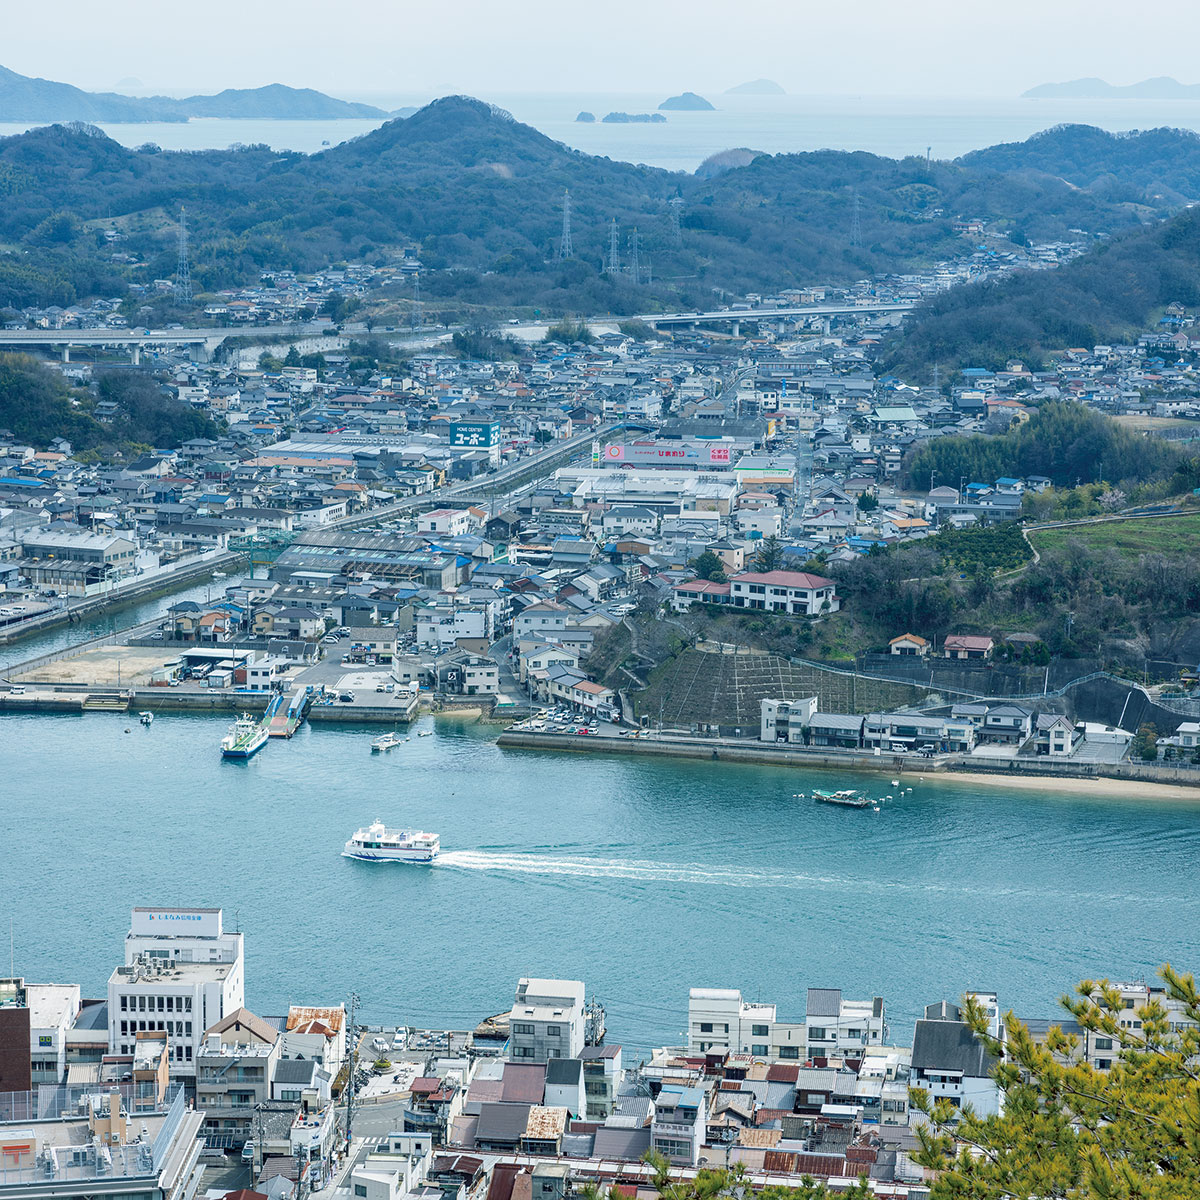 瀬戸内海に面した港町・尾道。町の中心に“海の川”尾道水道が通るのどかな景色は日本遺産にも認定されている。対岸に見える向島には日に何度も渡船が往来する。